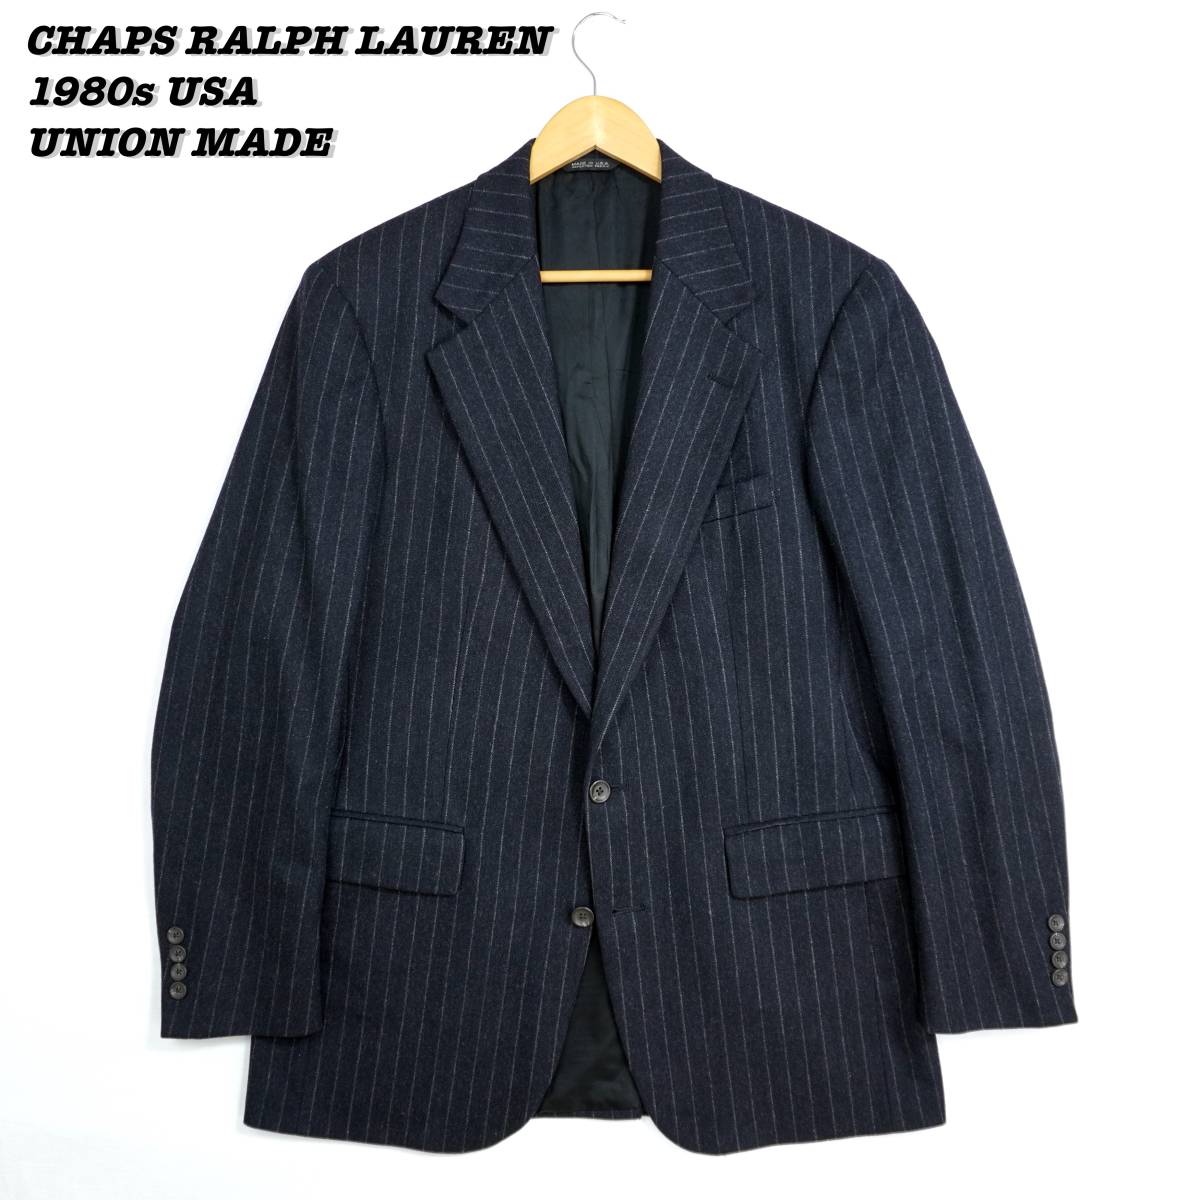 CHAPS RALPH LAUREN Tailored Jacket 1980s 304051 Vintage チャップス